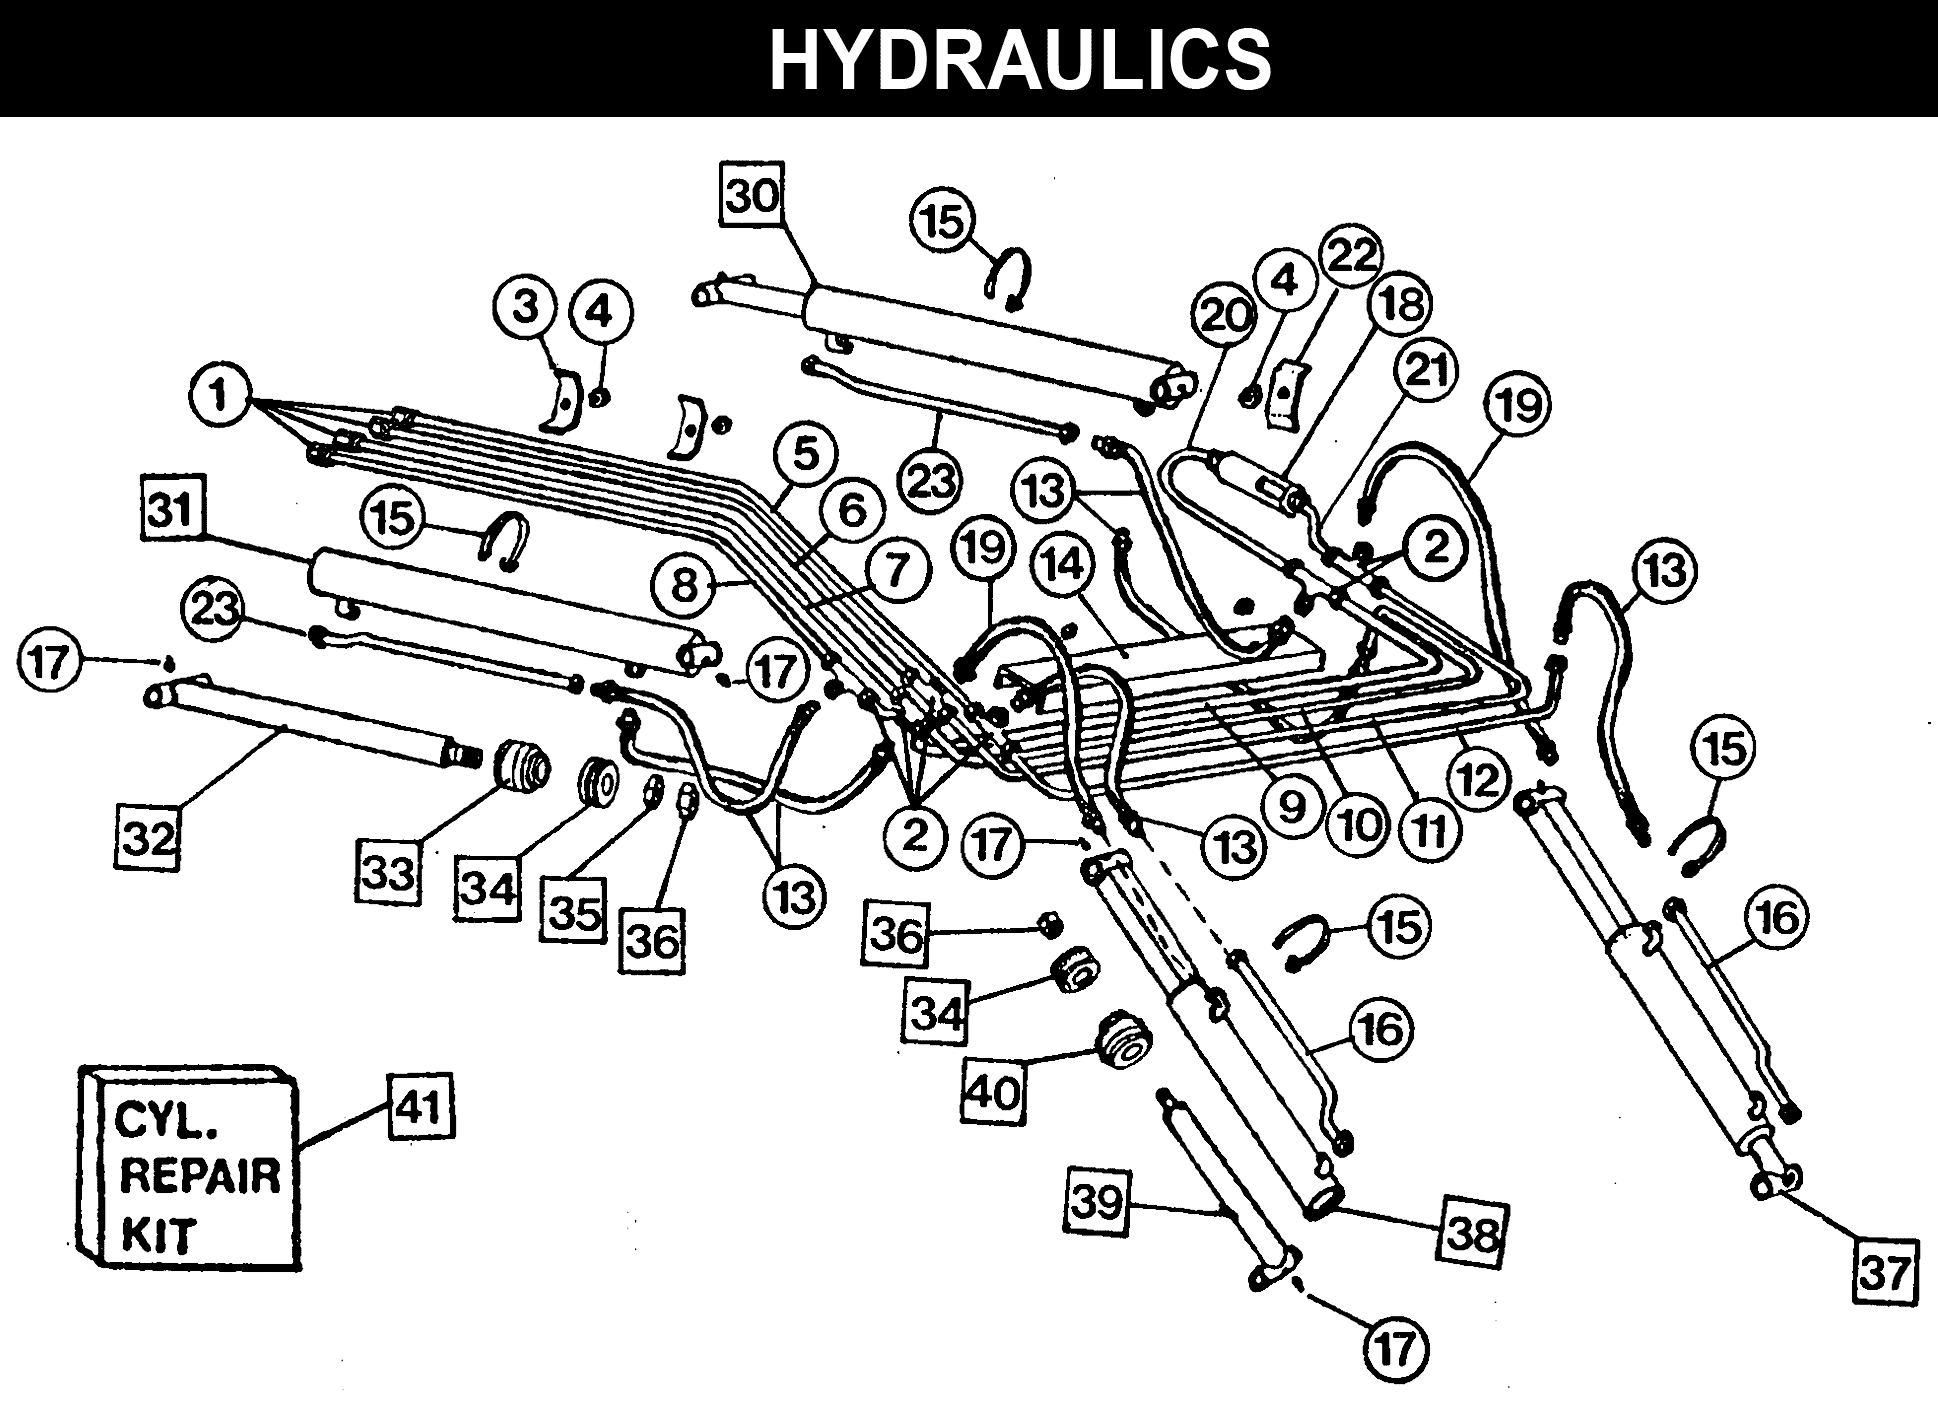 WL-42B HYDRAULICS